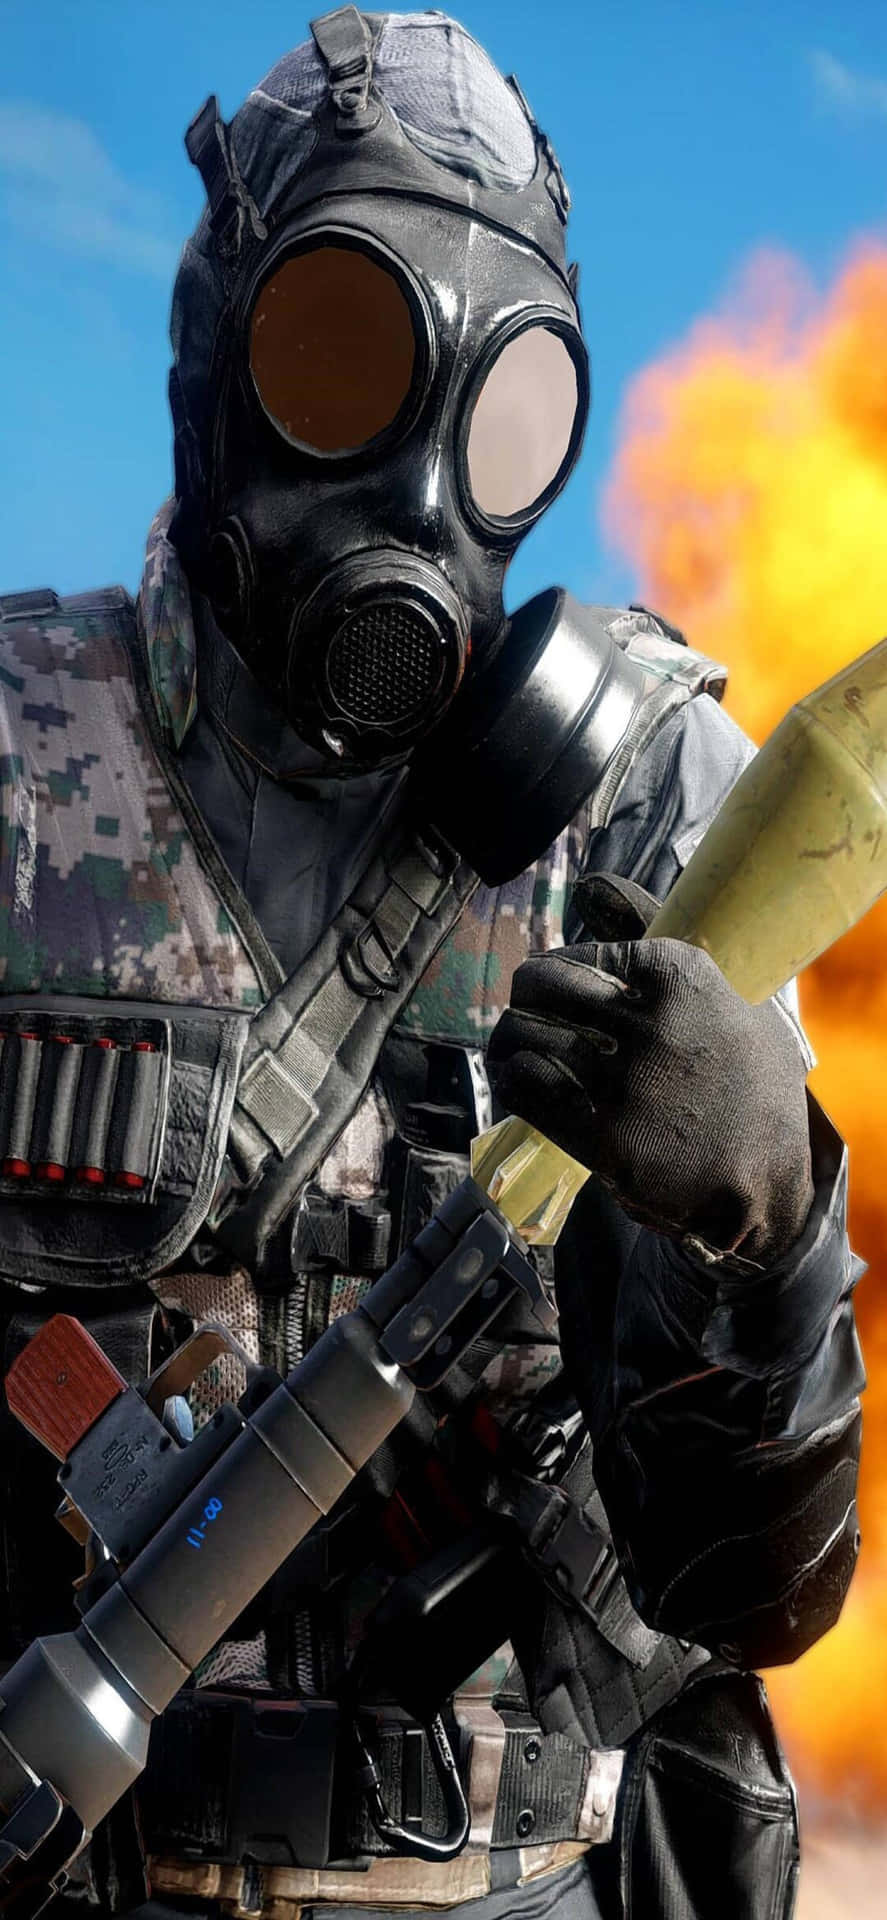 Fondode Pantalla De Soldado De Battlefield 4 Explosion Para El Iphone Xs